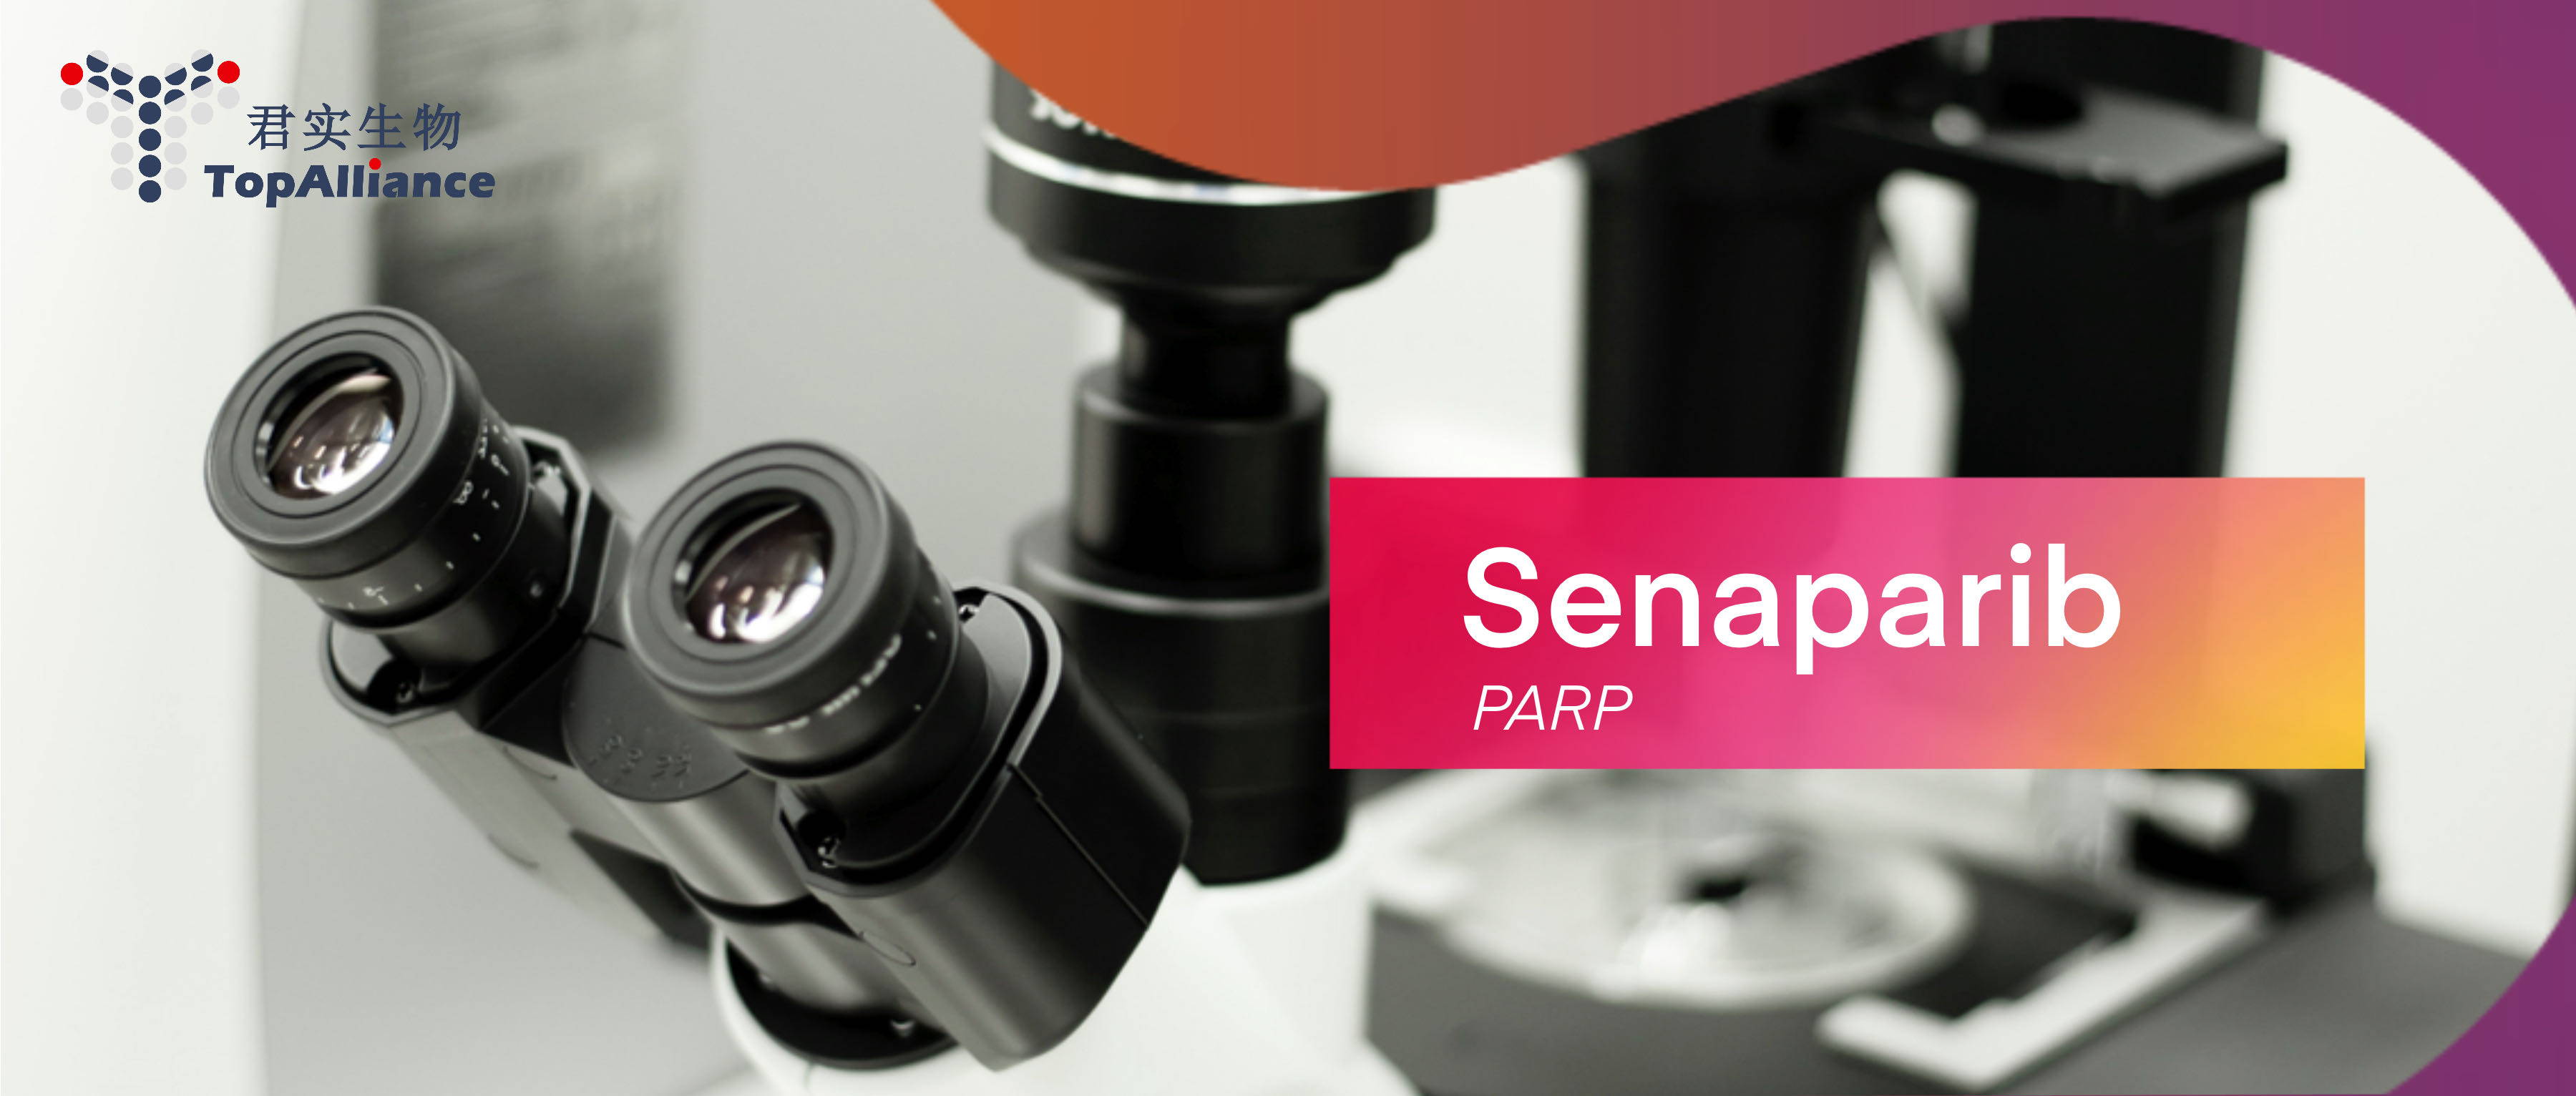 君实生物PARP抑制剂<font color="red">senaparib</font>用于晚期卵巢癌全人群一线维持治疗的III期临床研究达到主要研究终点